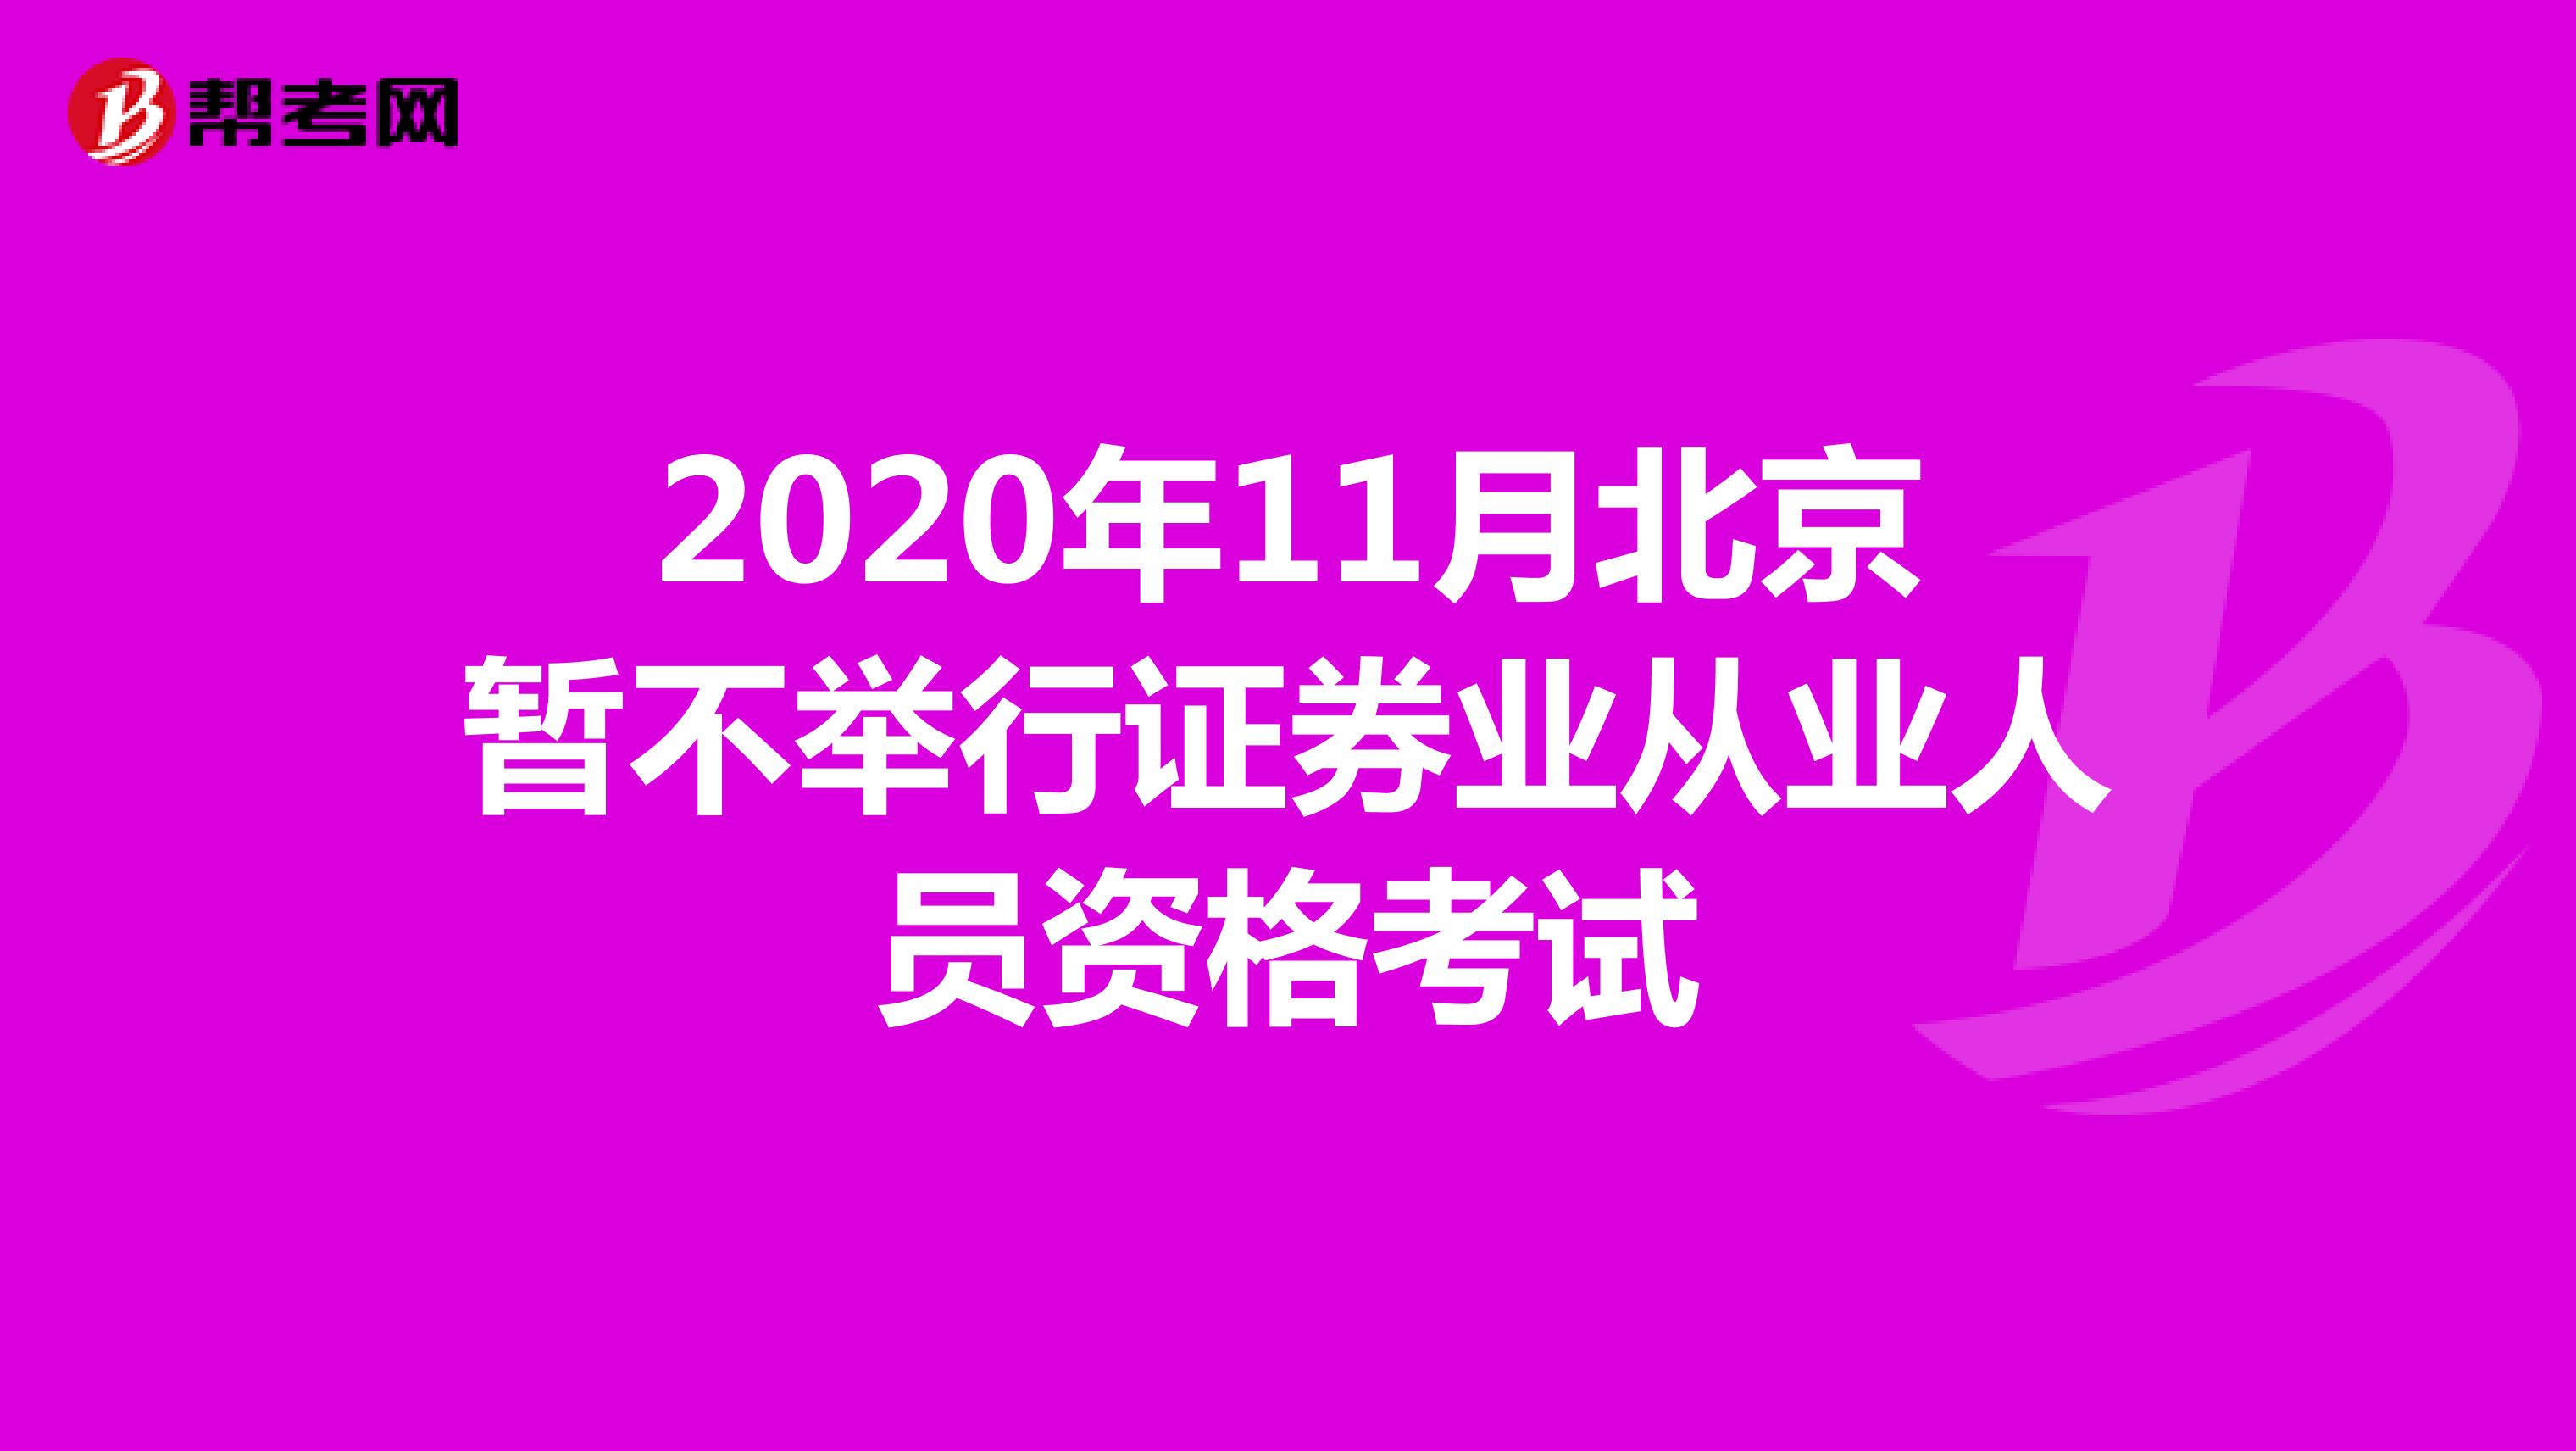 2020年11月北京暂不举行证券业从业人员资格考试